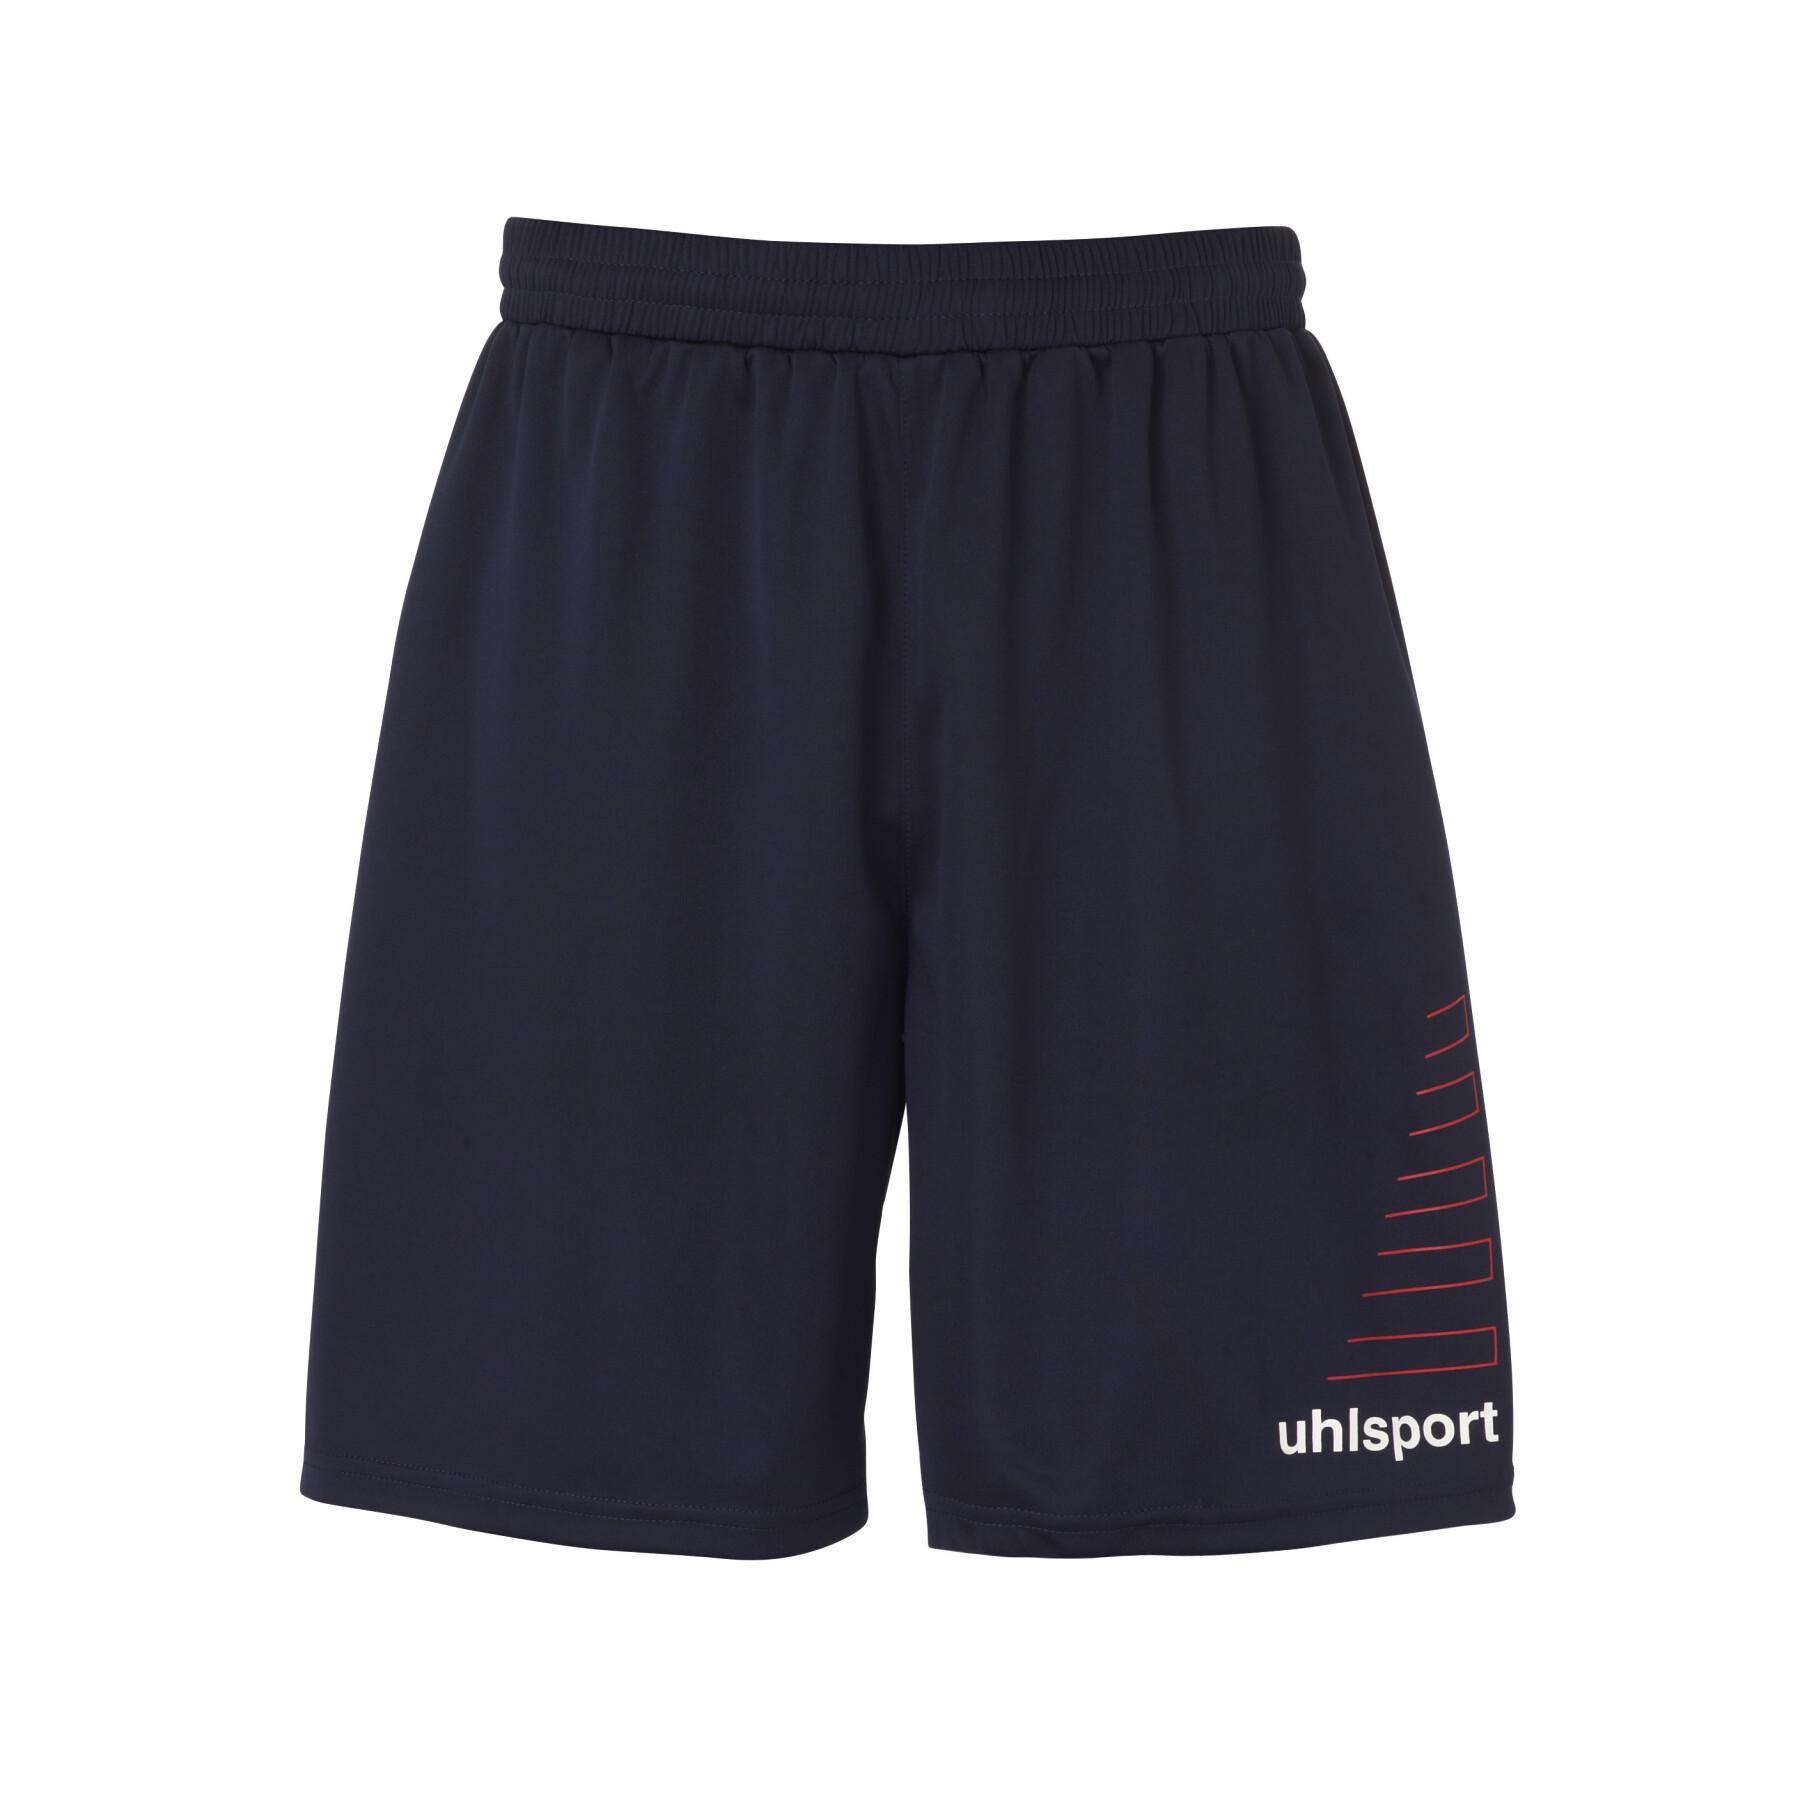 Kindershirt + broekje kit Uhlsport Team Kit 